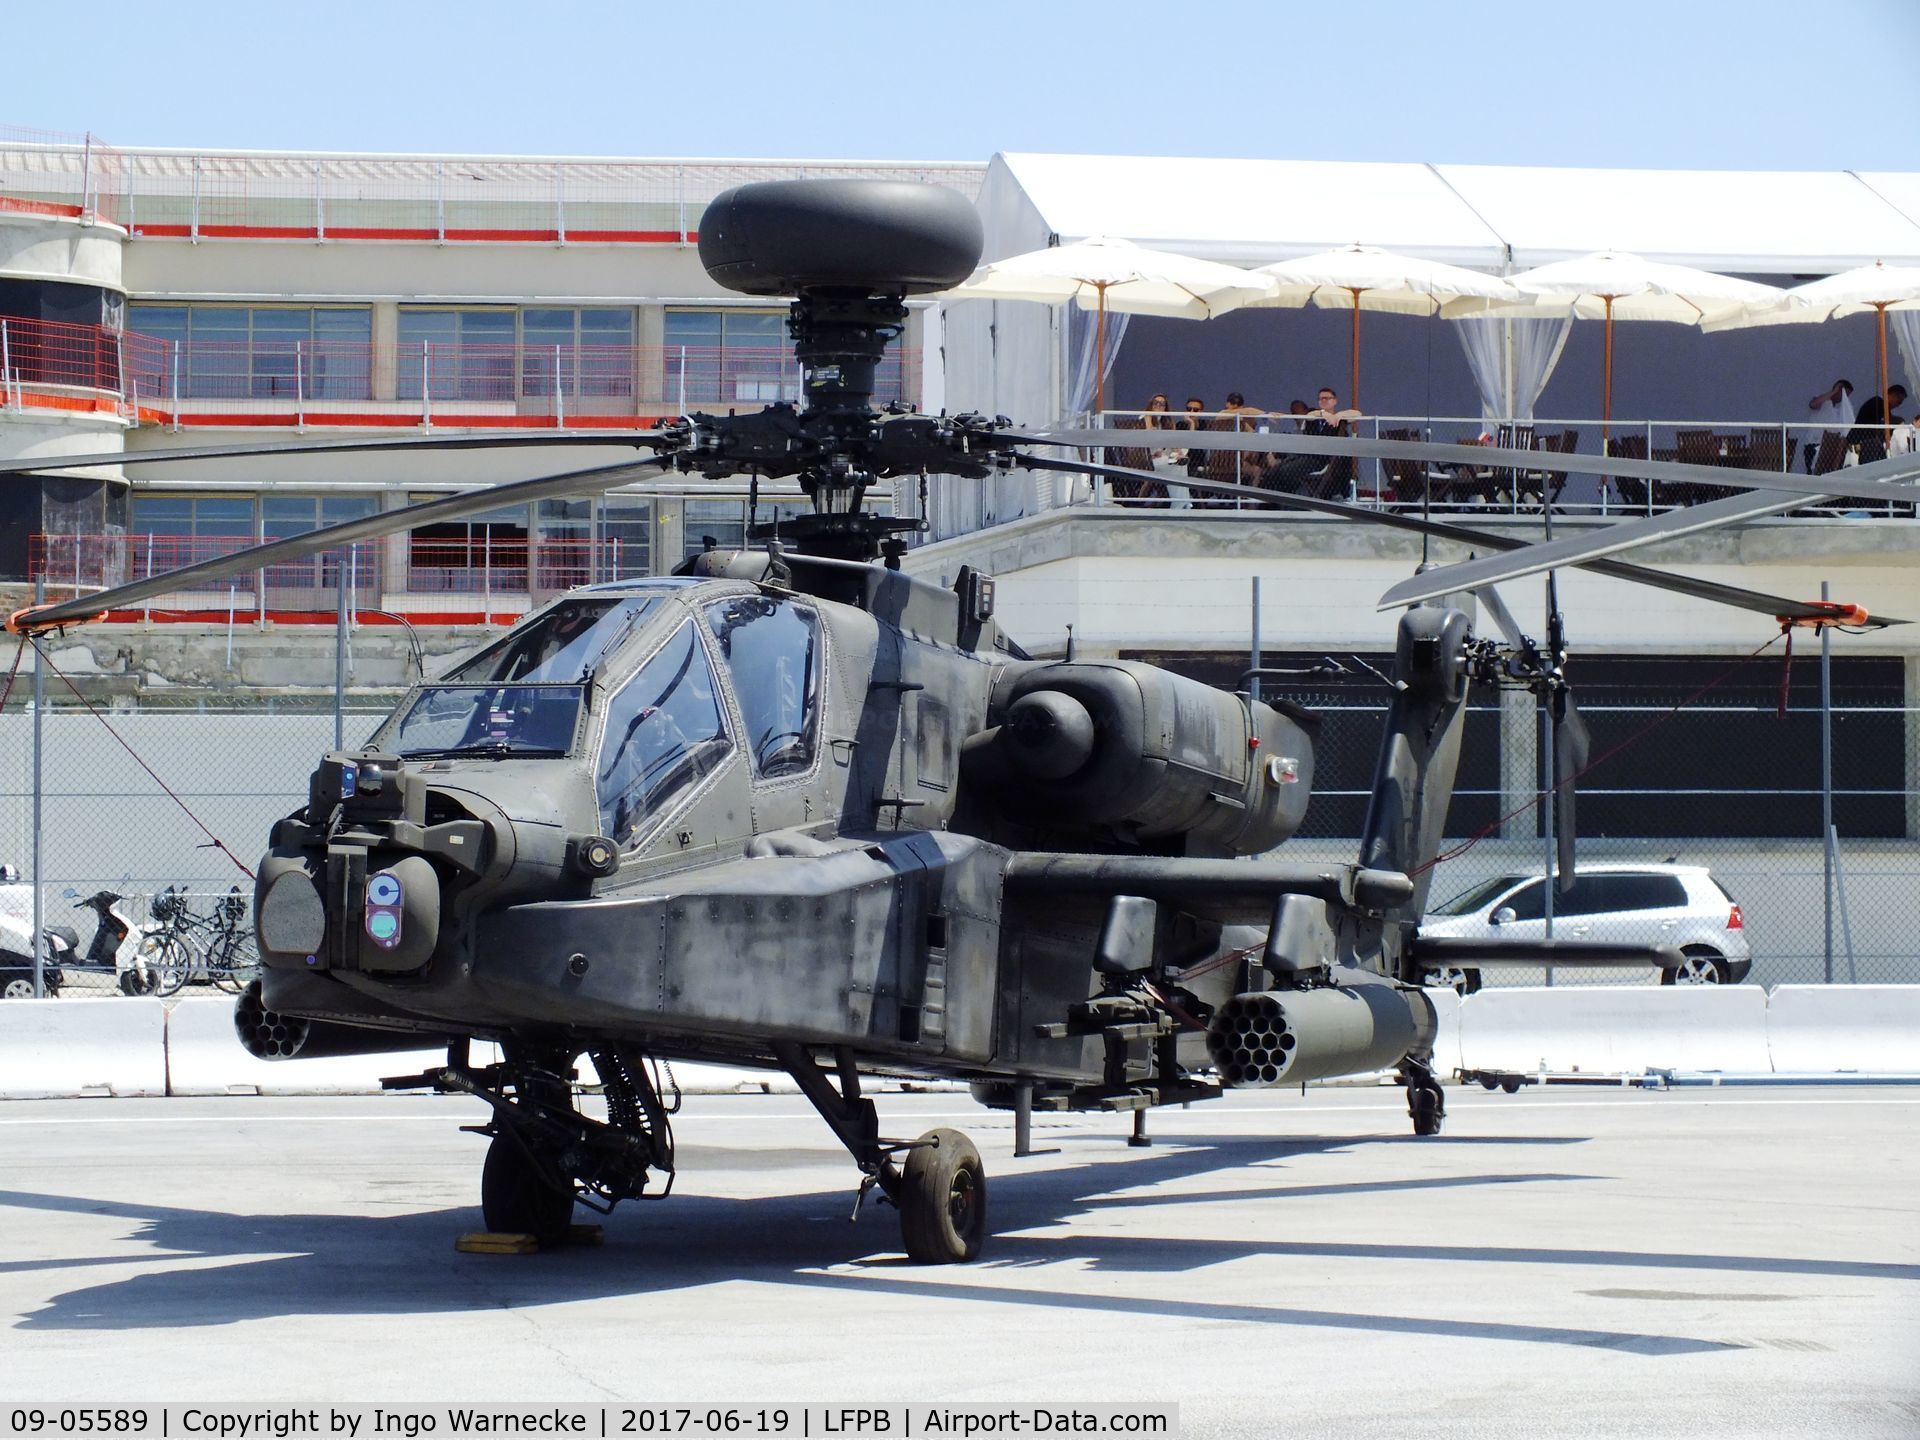 09-05589, Boeing AH-64D Longbow Apache C/N PVD589, Boeing AH-64D Apache Longbow of the US Army at the Aerosalon 2017, Paris